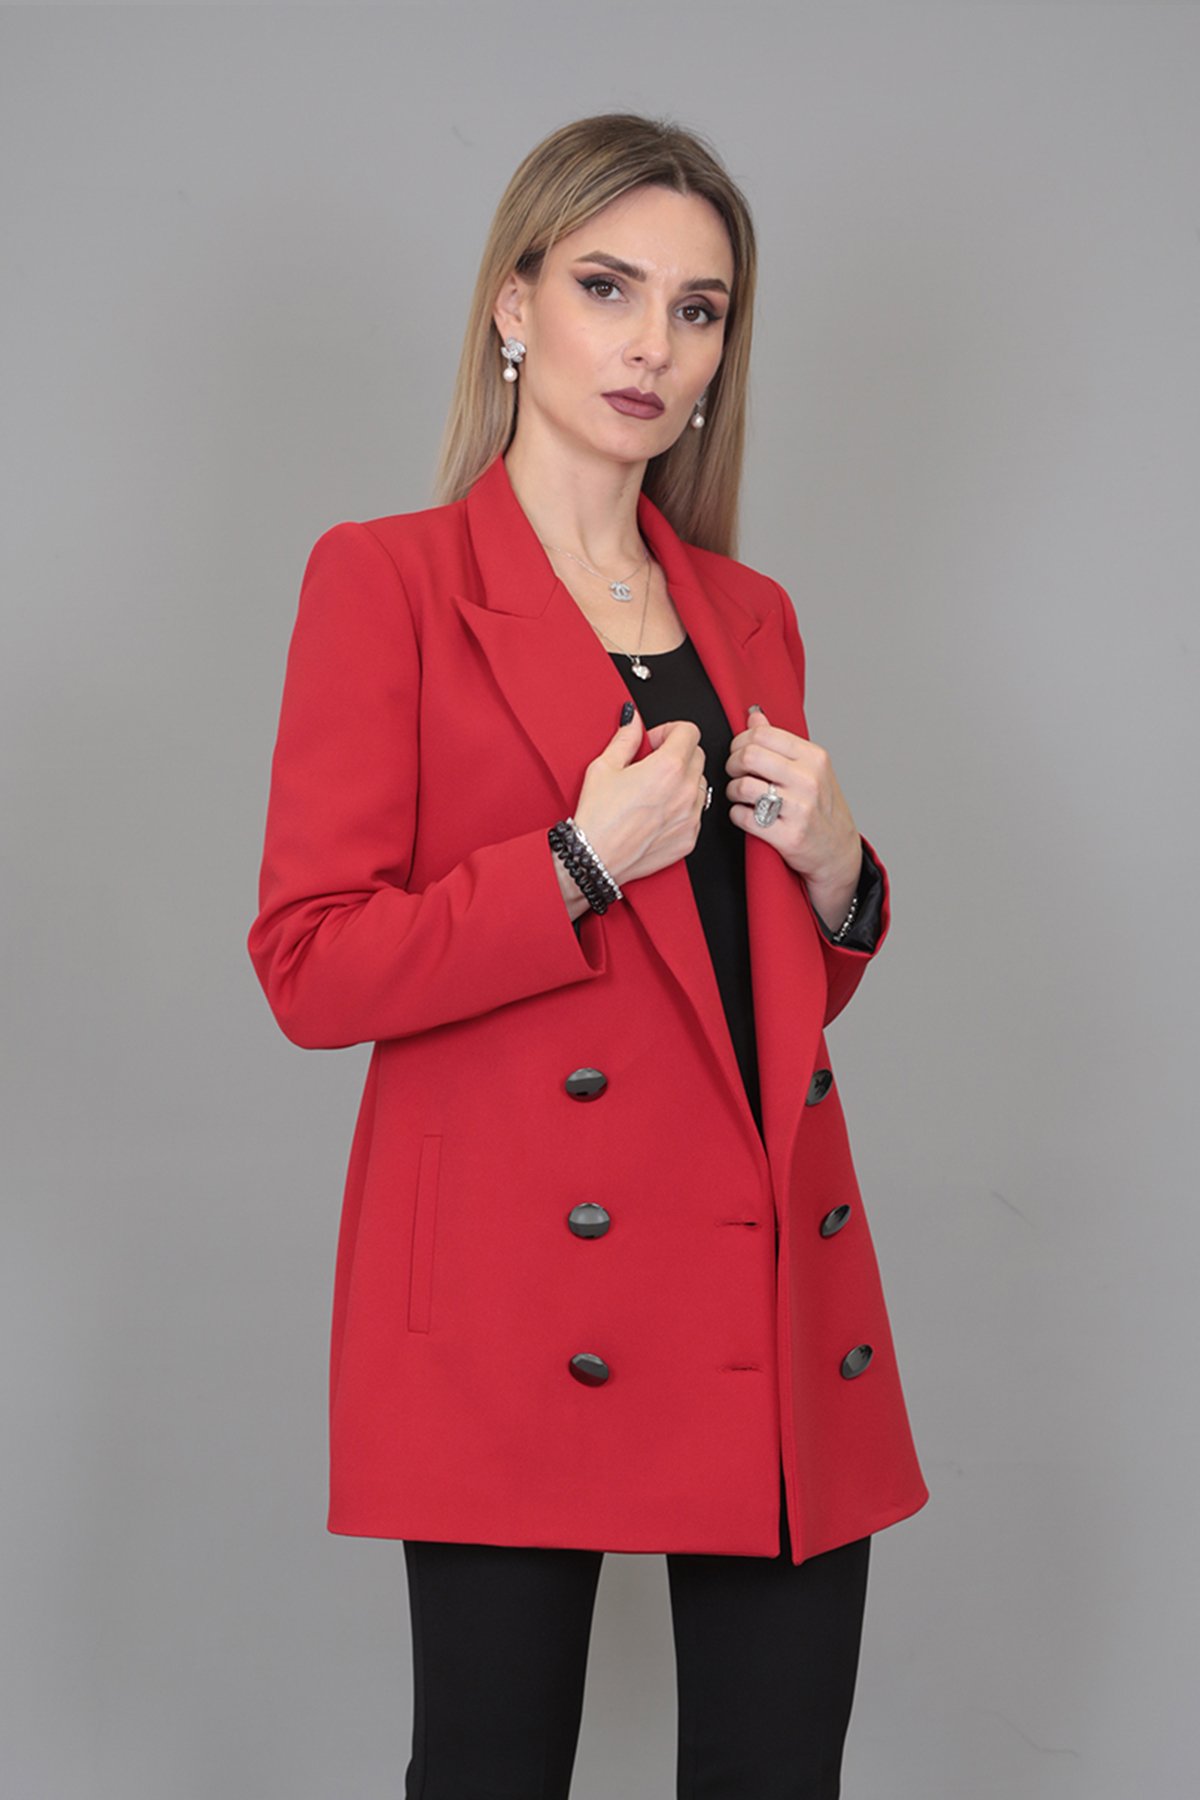 Uzun Klasik Blazer Ceket-Kırmızı - Önder Özsoy | Ofis Giyim | Yeni Sezon